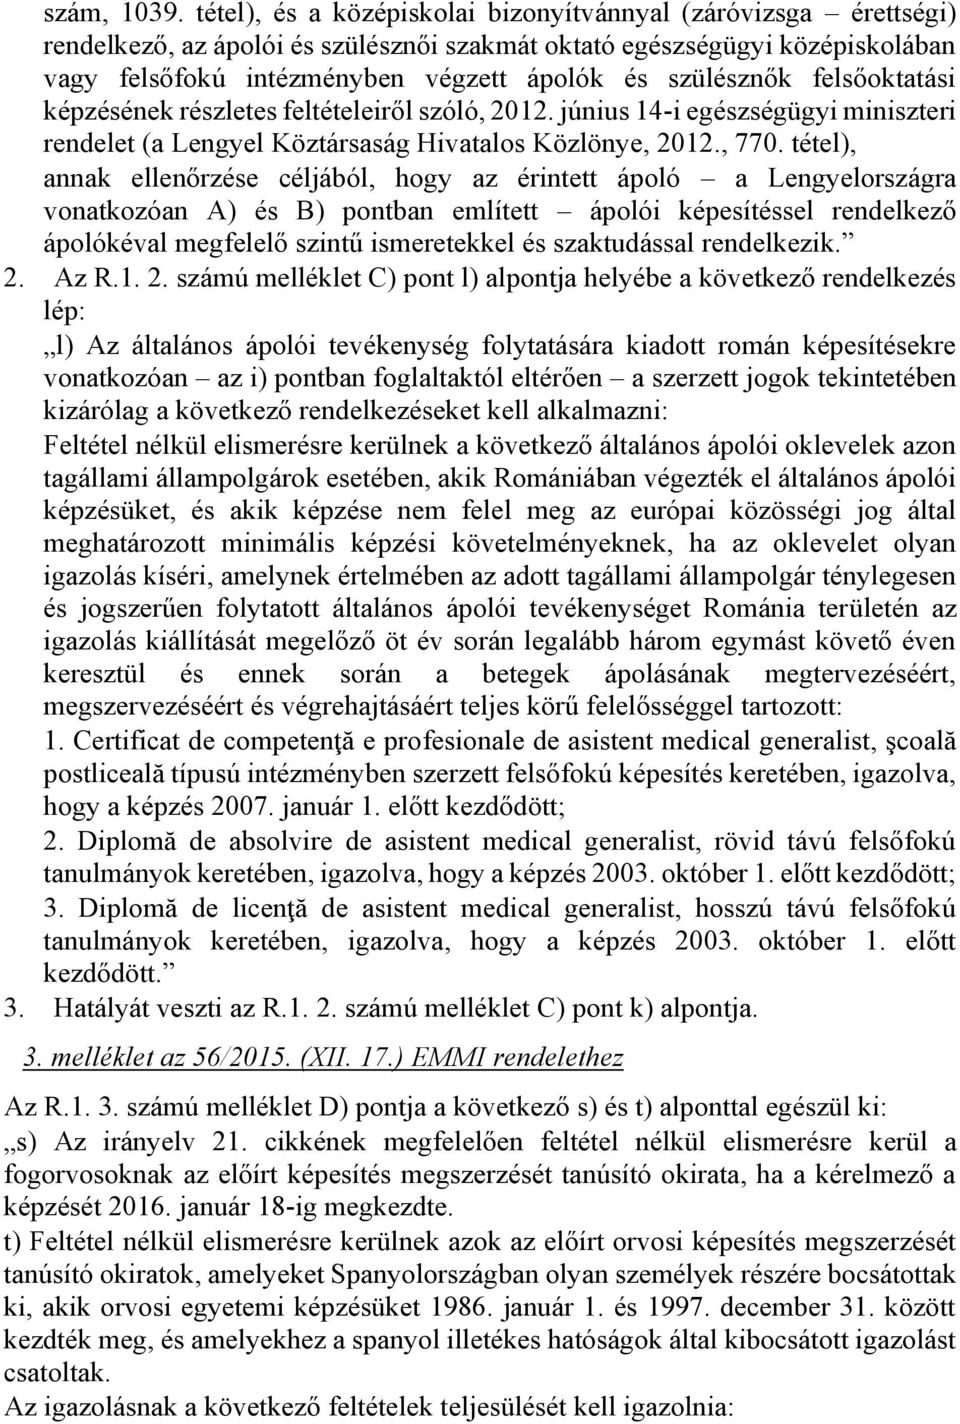 szülésznők felsőoktatási képzésének részletes feltételeiről szóló, 2012. június 14-i egészségügyi miniszteri rendelet (a Lengyel Köztársaság Hivatalos Közlönye, 2012., 770.